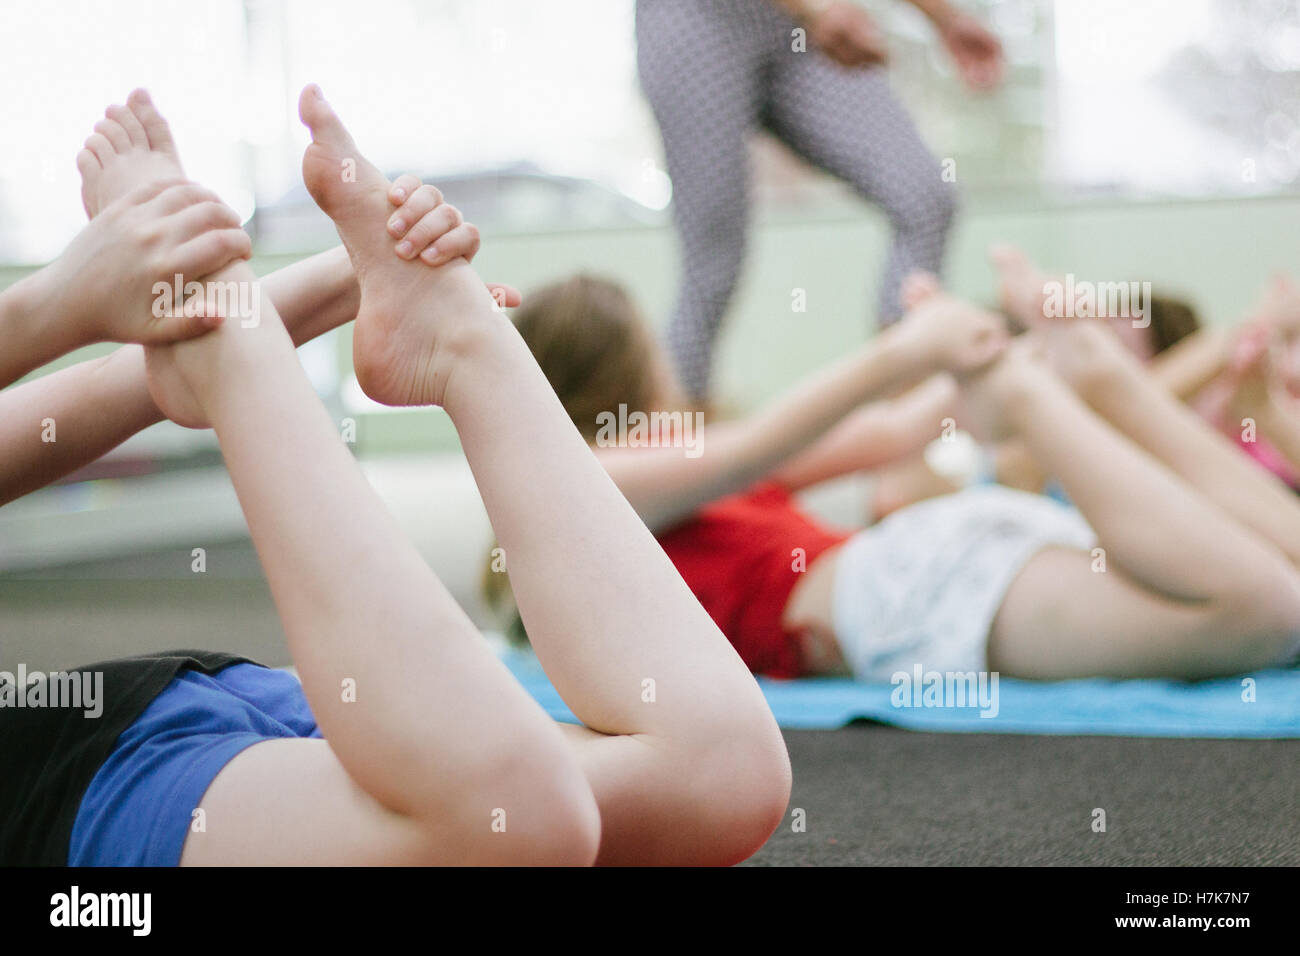 Esta imagen muestra algunos Bow pose en una clase de yoga para niños. Foto de stock